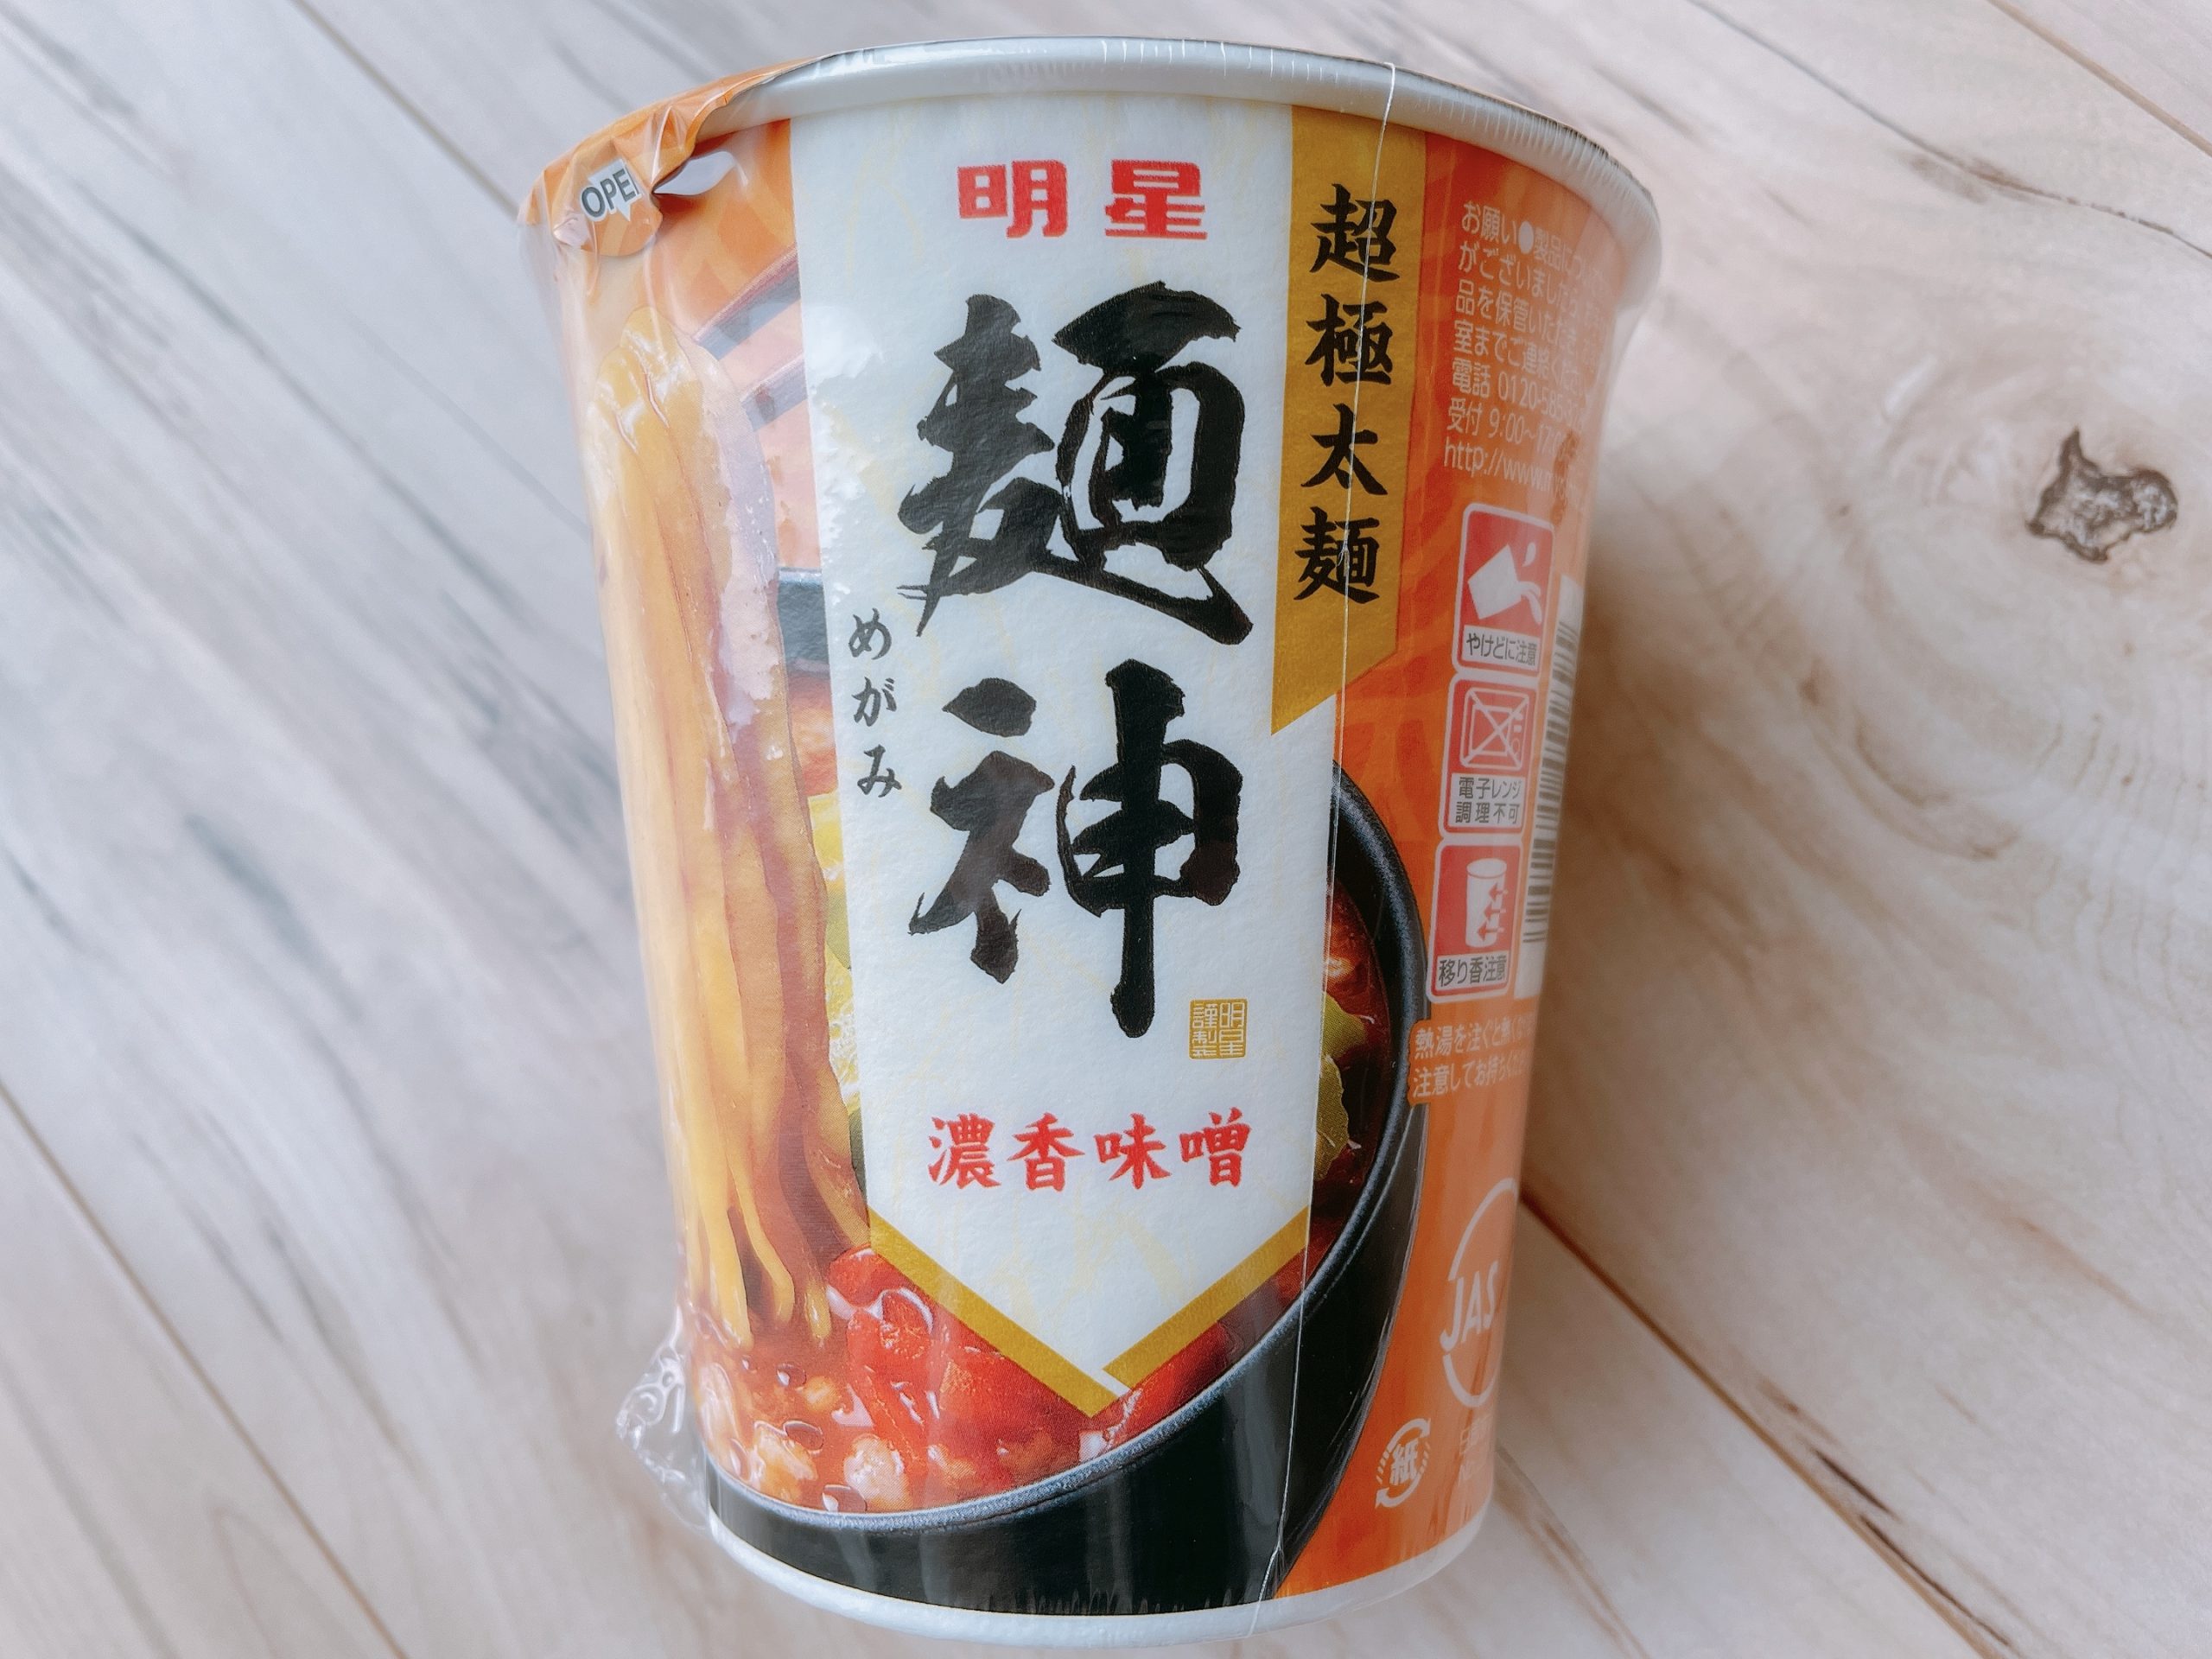 明星 麺神カップ 濃香味噌パッケージ